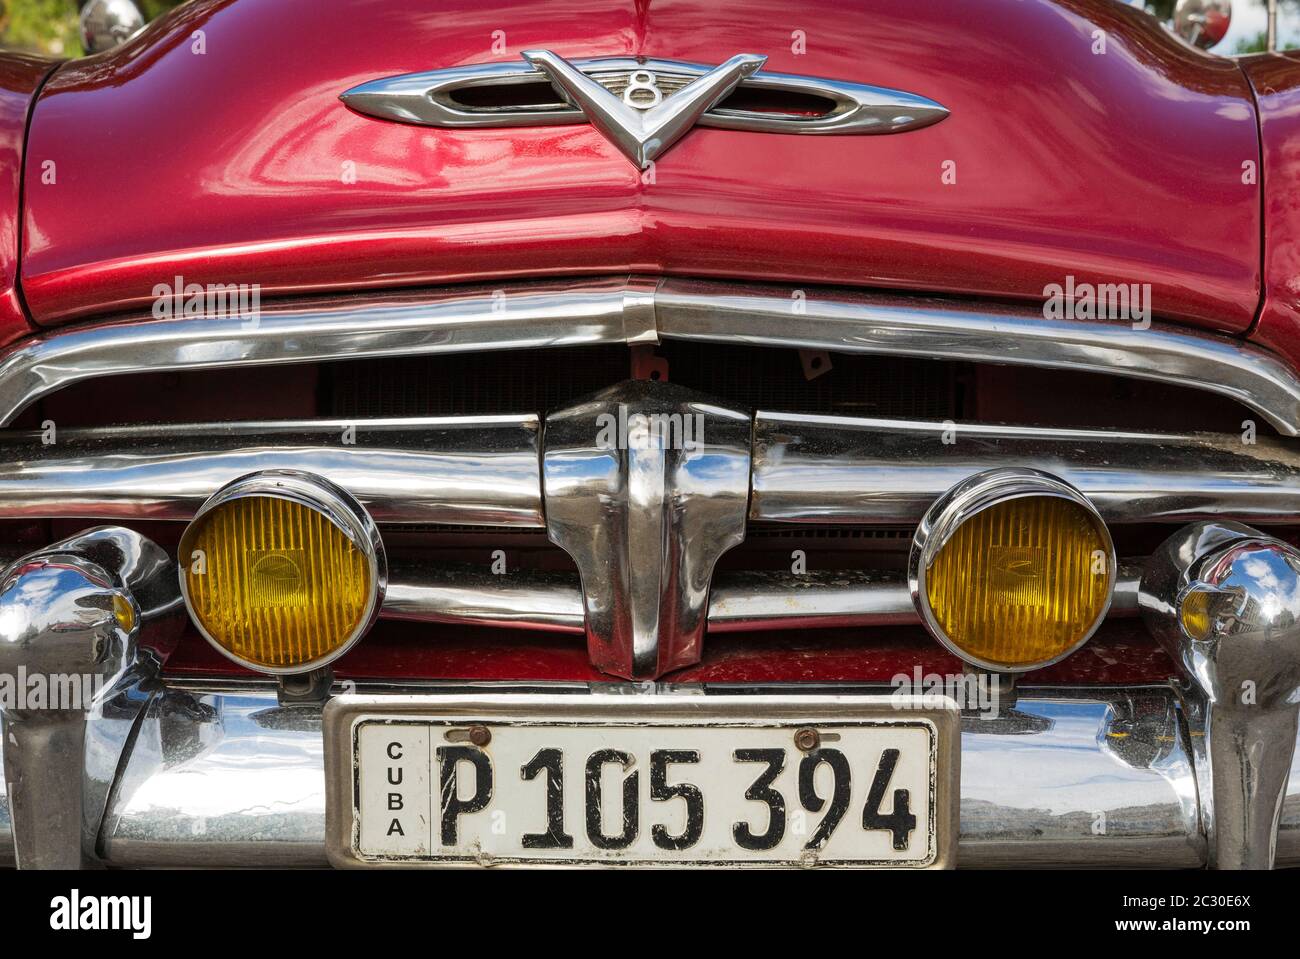 LES voitures classiques DES ANNÉES 1950 PEUVENT être louées pour des visites touristiques de la ville, ici un détail d'une Dodge de 1954, la Havane, Cuba Banque D'Images